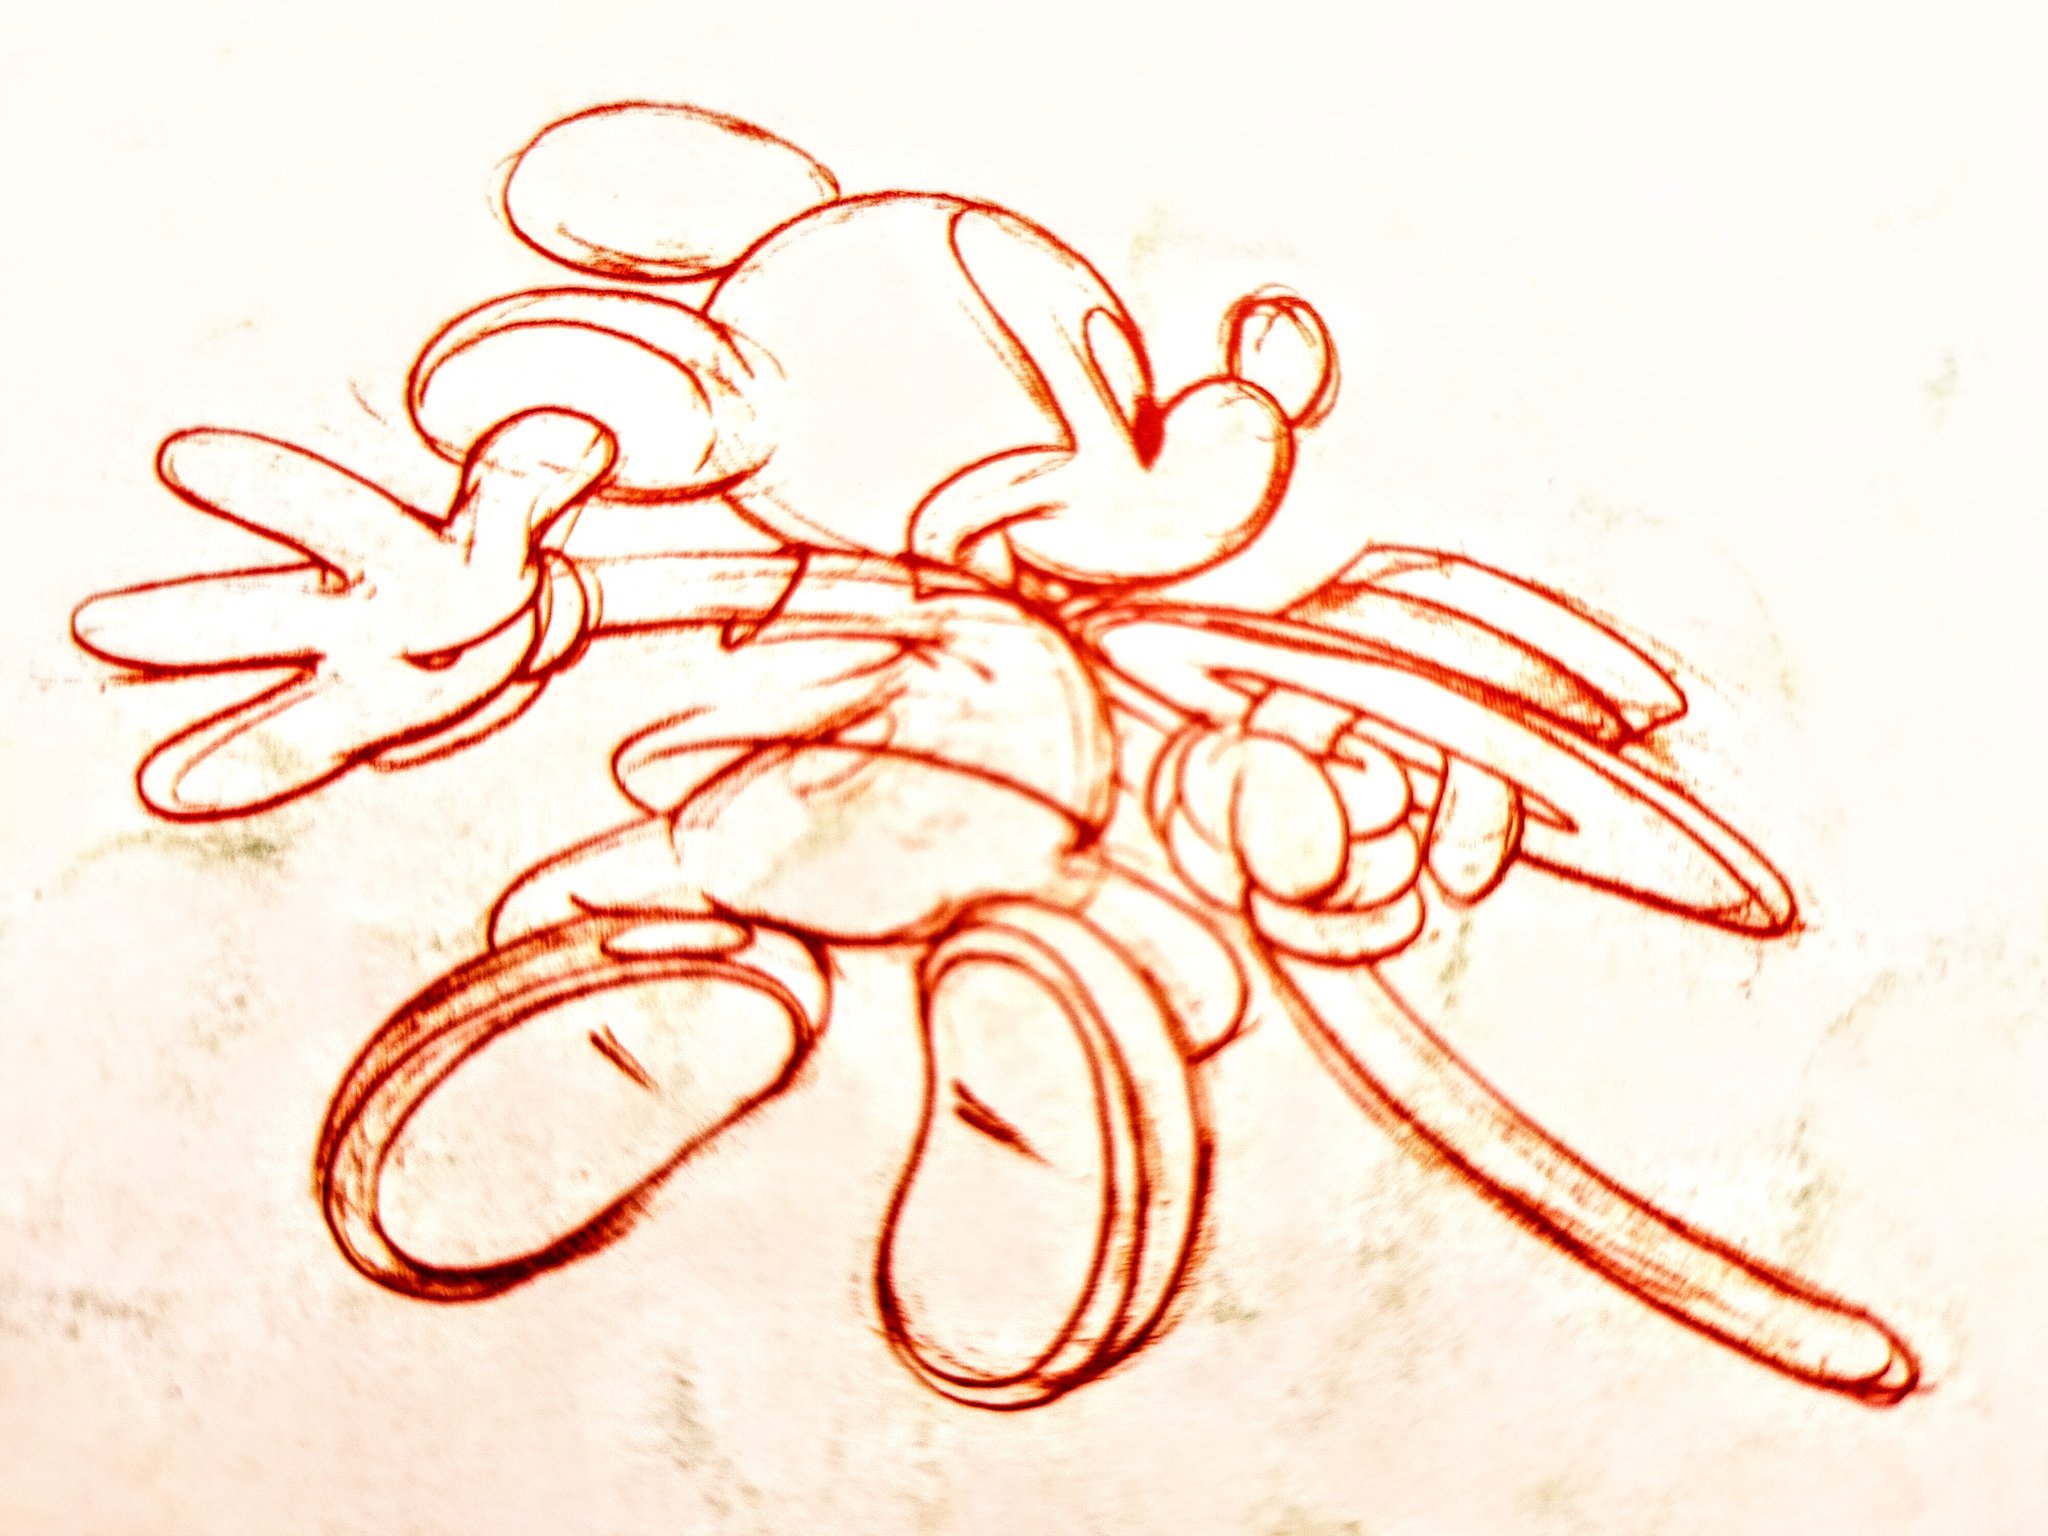 へっちゃん 落書きしてみた ディズニー ミッキーマウス 色鉛筆 素描 Disney Mickeymouse Drawing Coloredpencils Graffiti 絵描きさんと繋がりたい イラスト好きさんと繋がりたい ディズニーマニアと繋がりたい T Co P3bc4hknrq